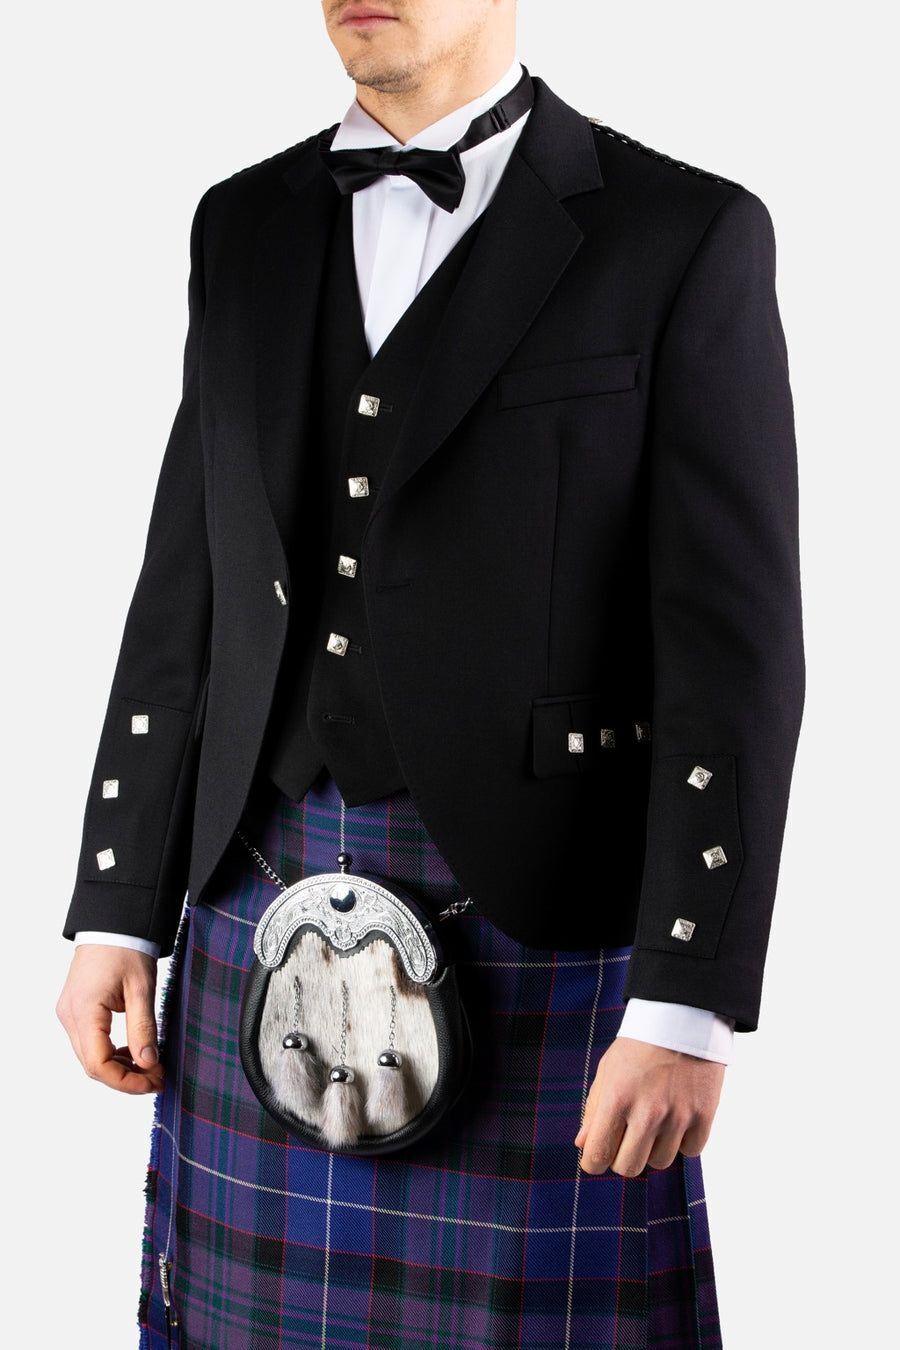 Black Argyll Jacket & Vest Waistcoat 100% Wool Kilt Jacket